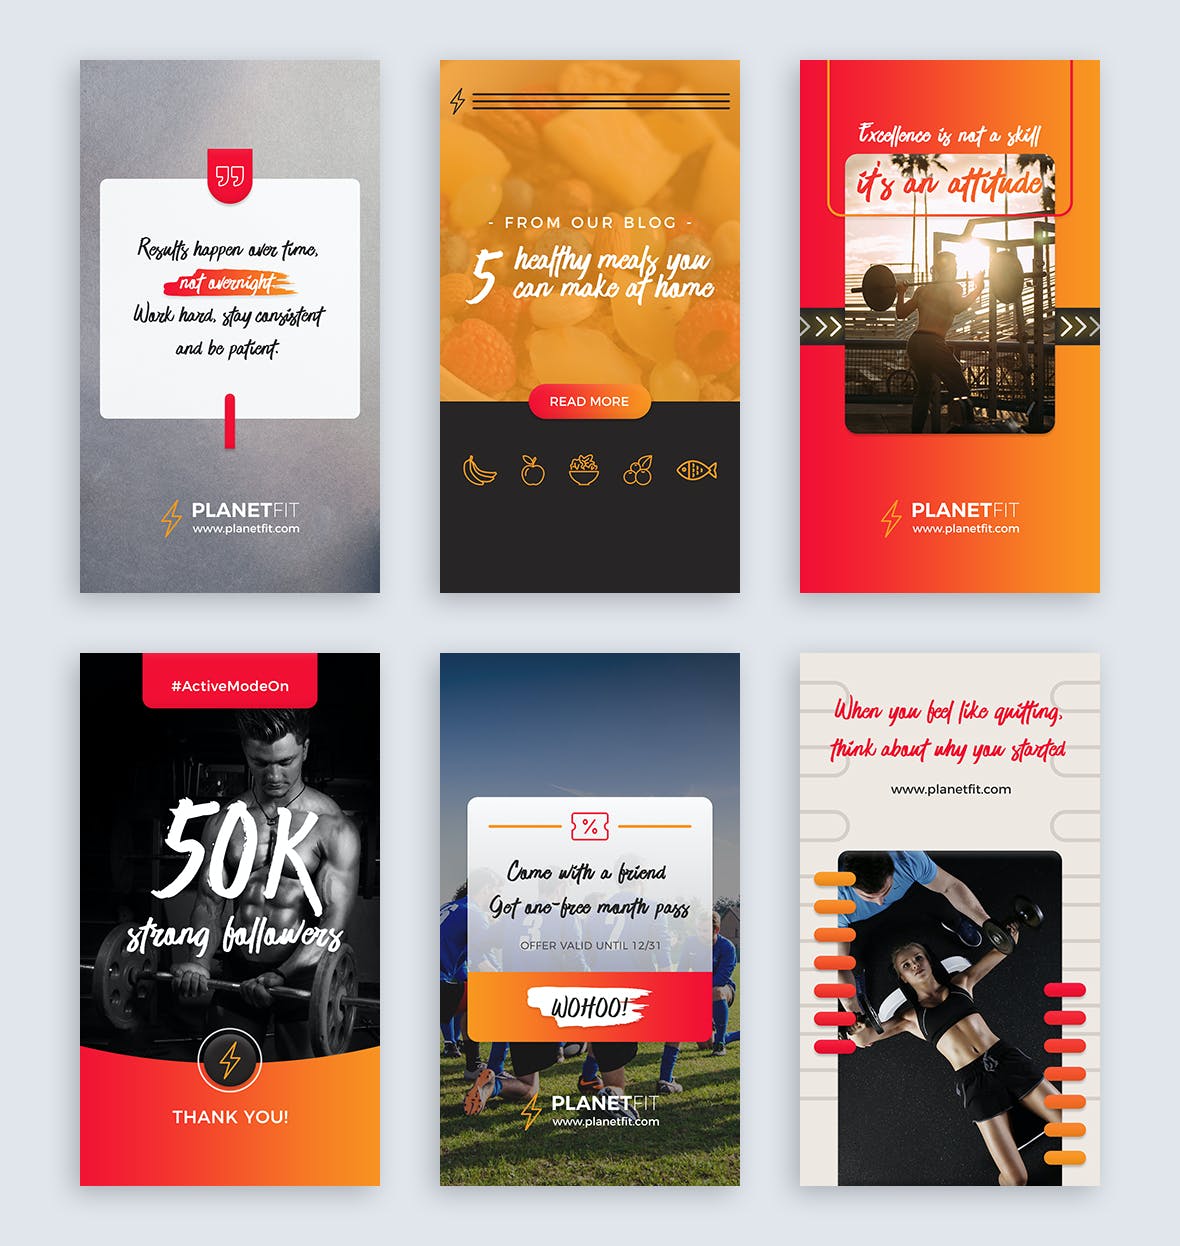 二十个健身俱乐部社交媒体宣传Instagram故事设计模板 Instagram Stories设计素材模板